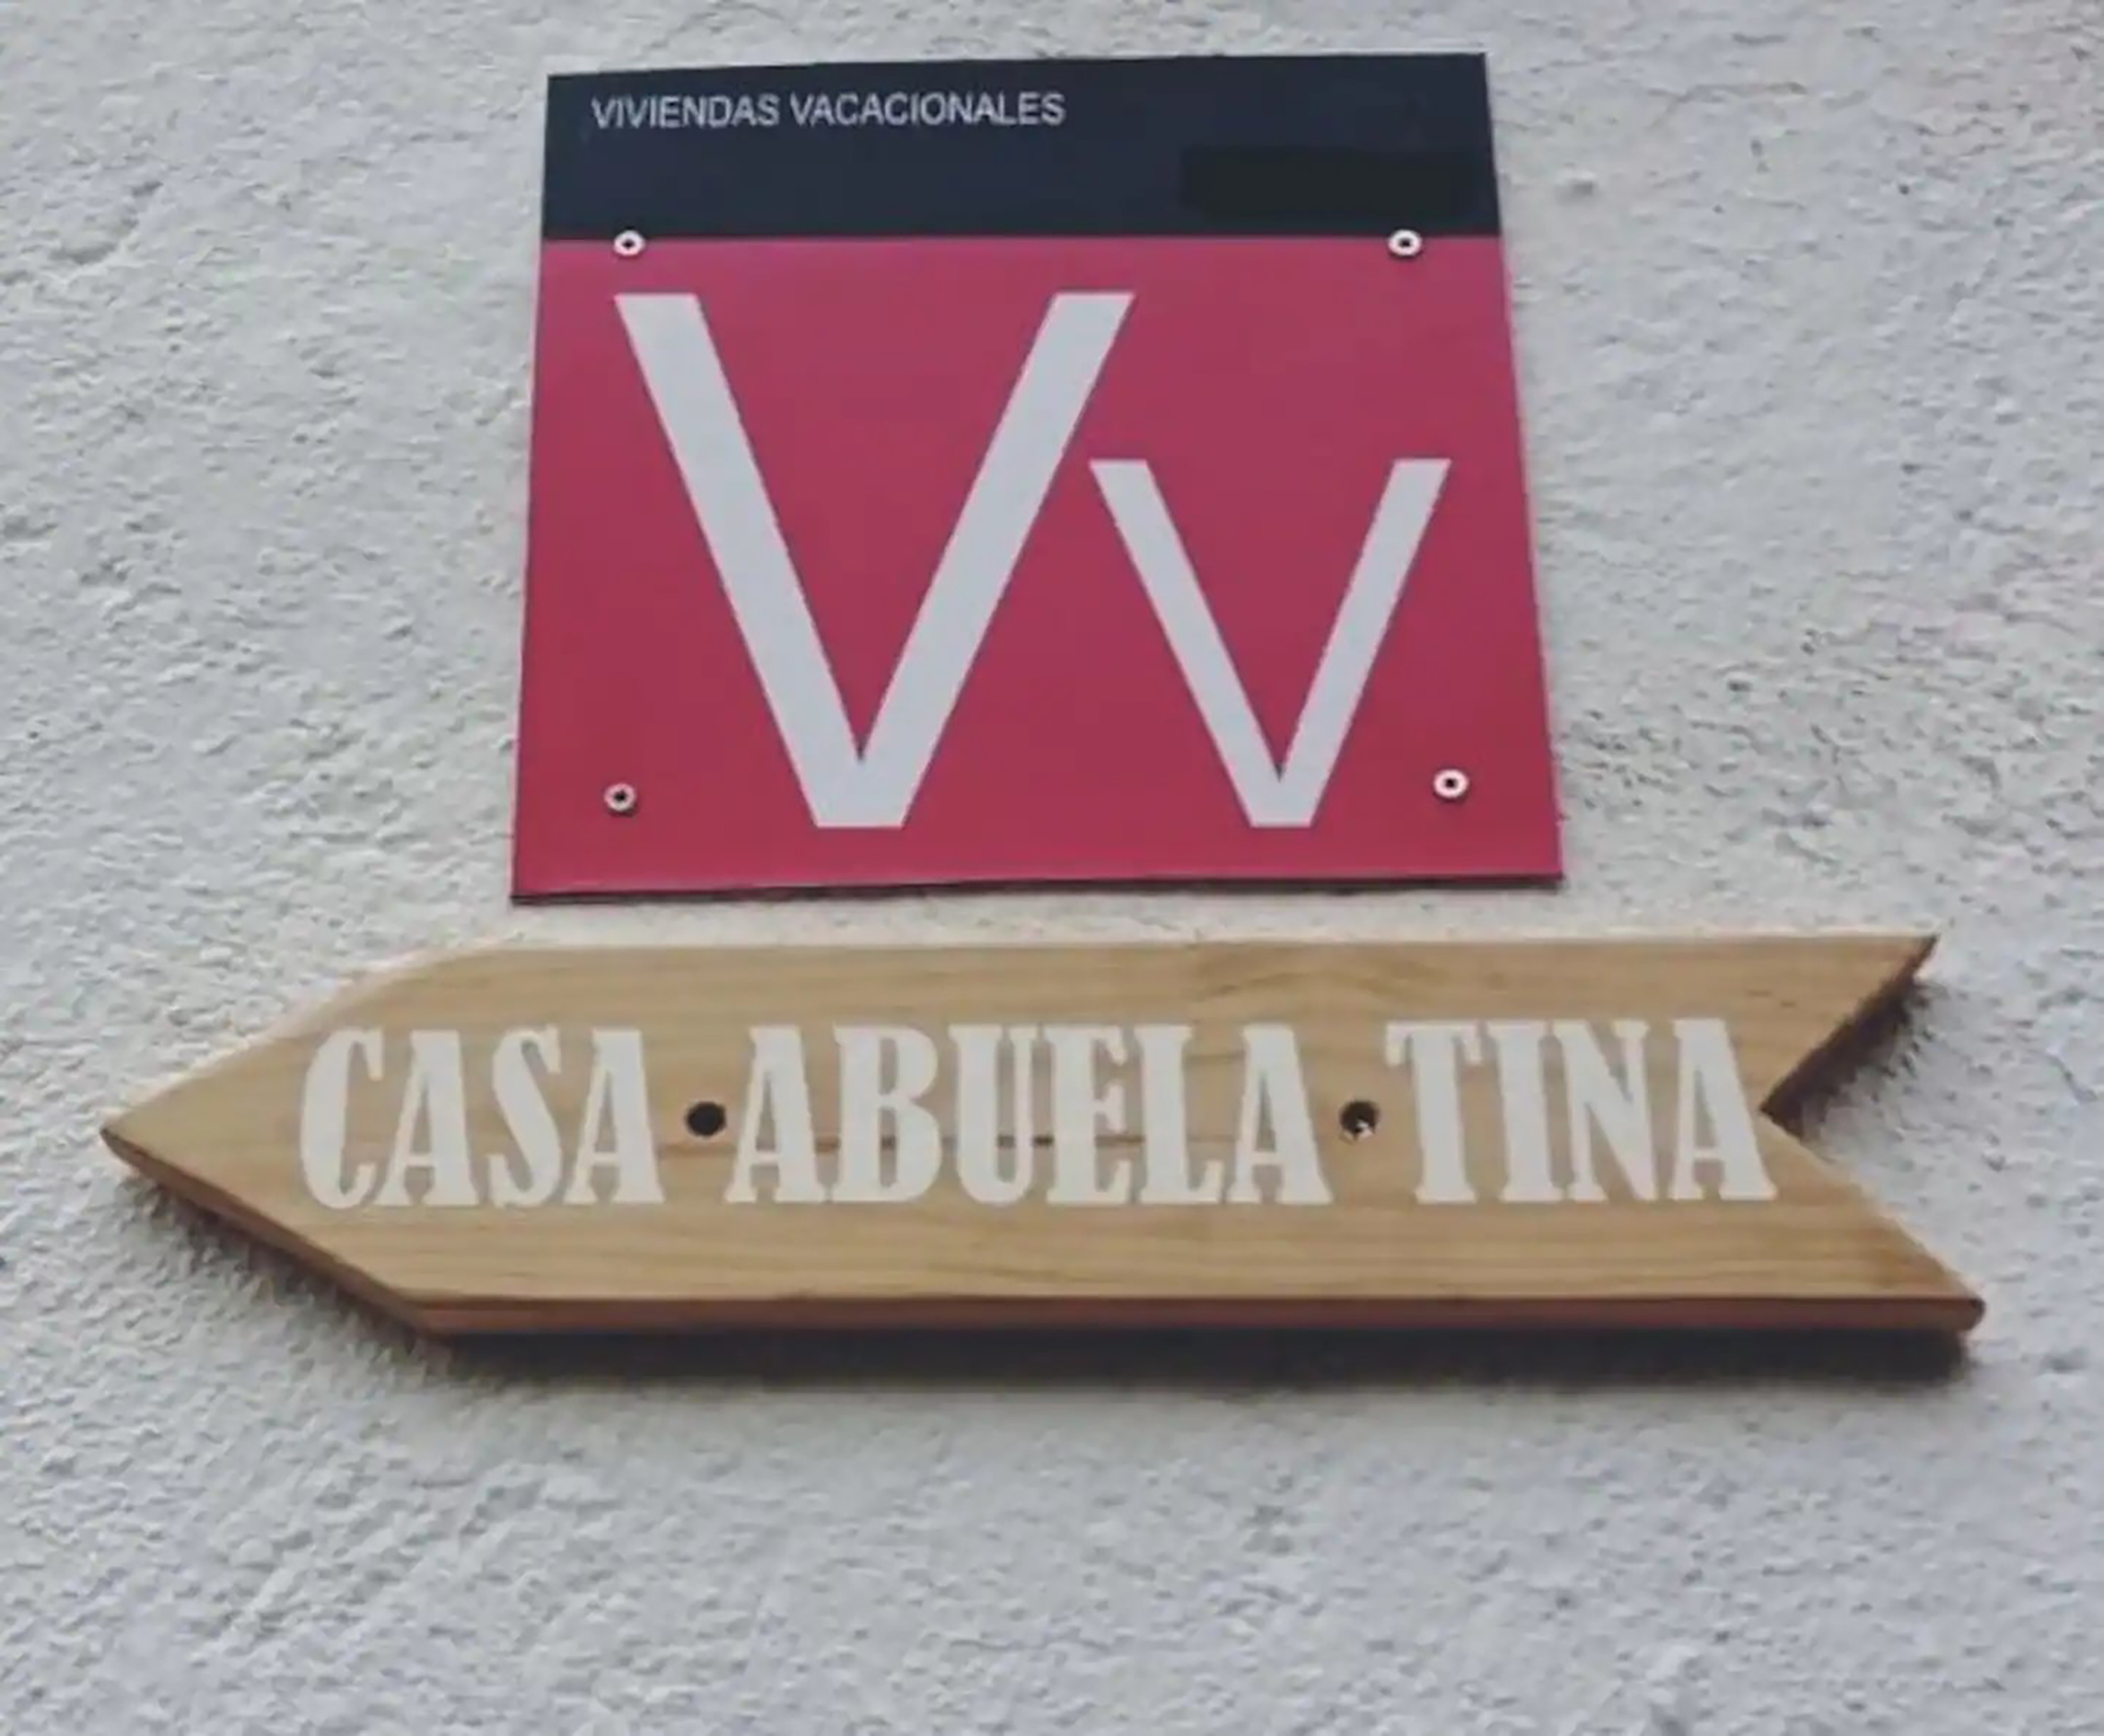 La propriété de deux chambres s'appelle Casa Abuela Tina.